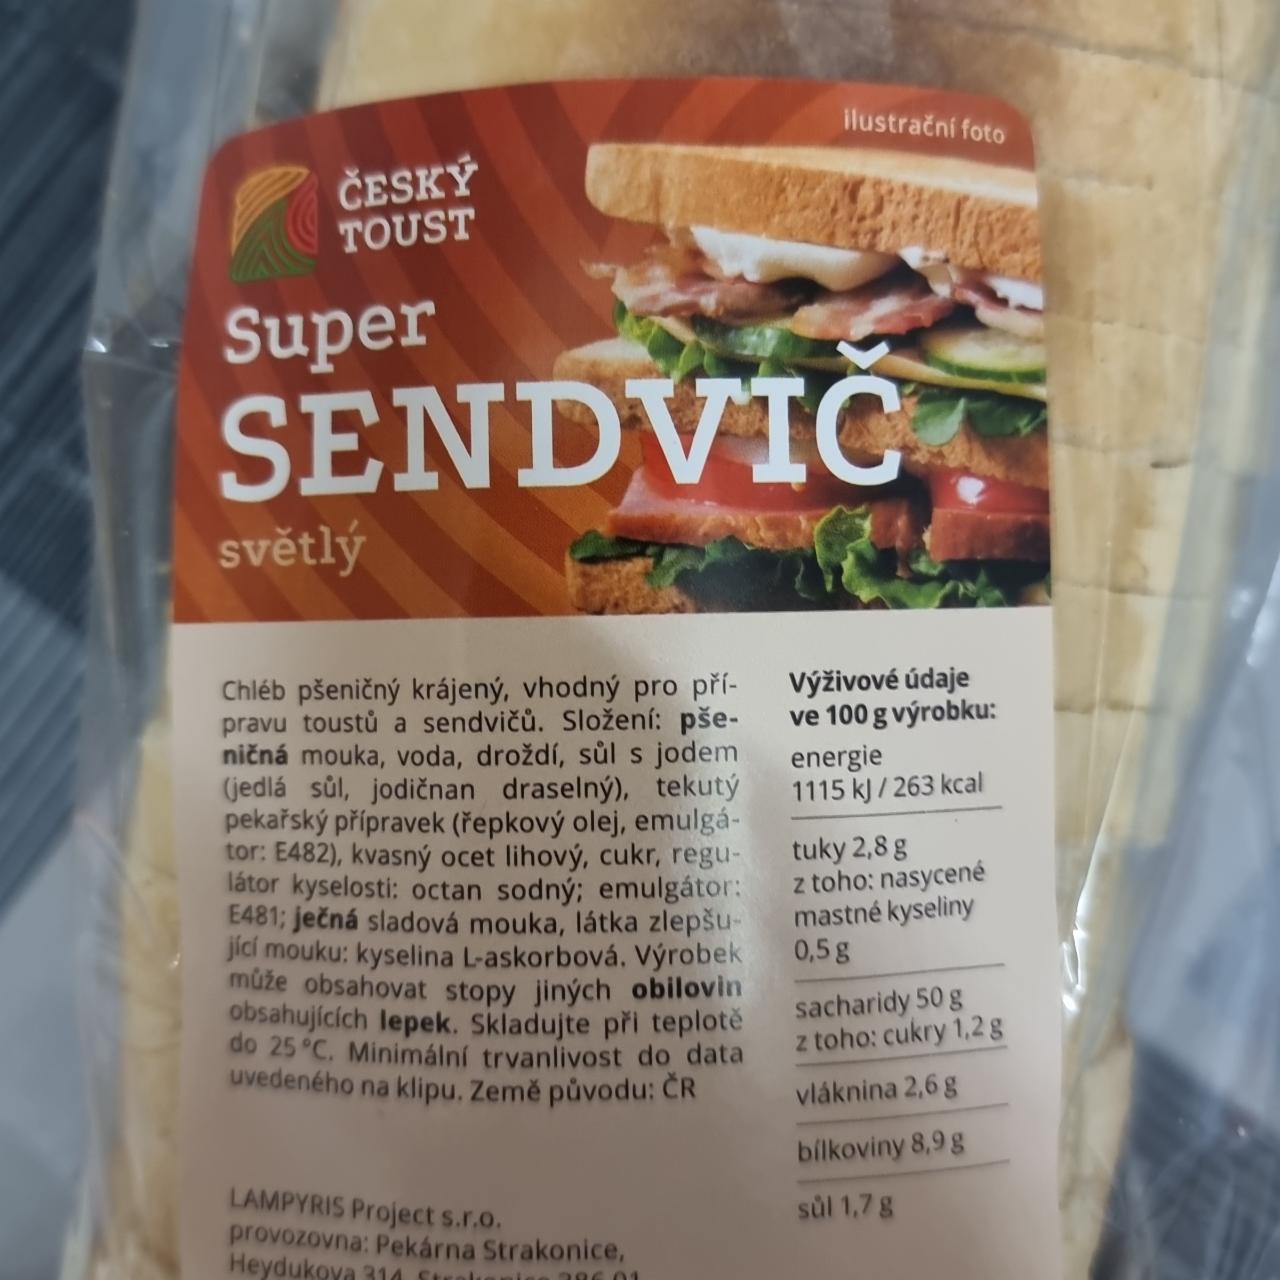 Fotografie - Super sendvič světlý Český toust